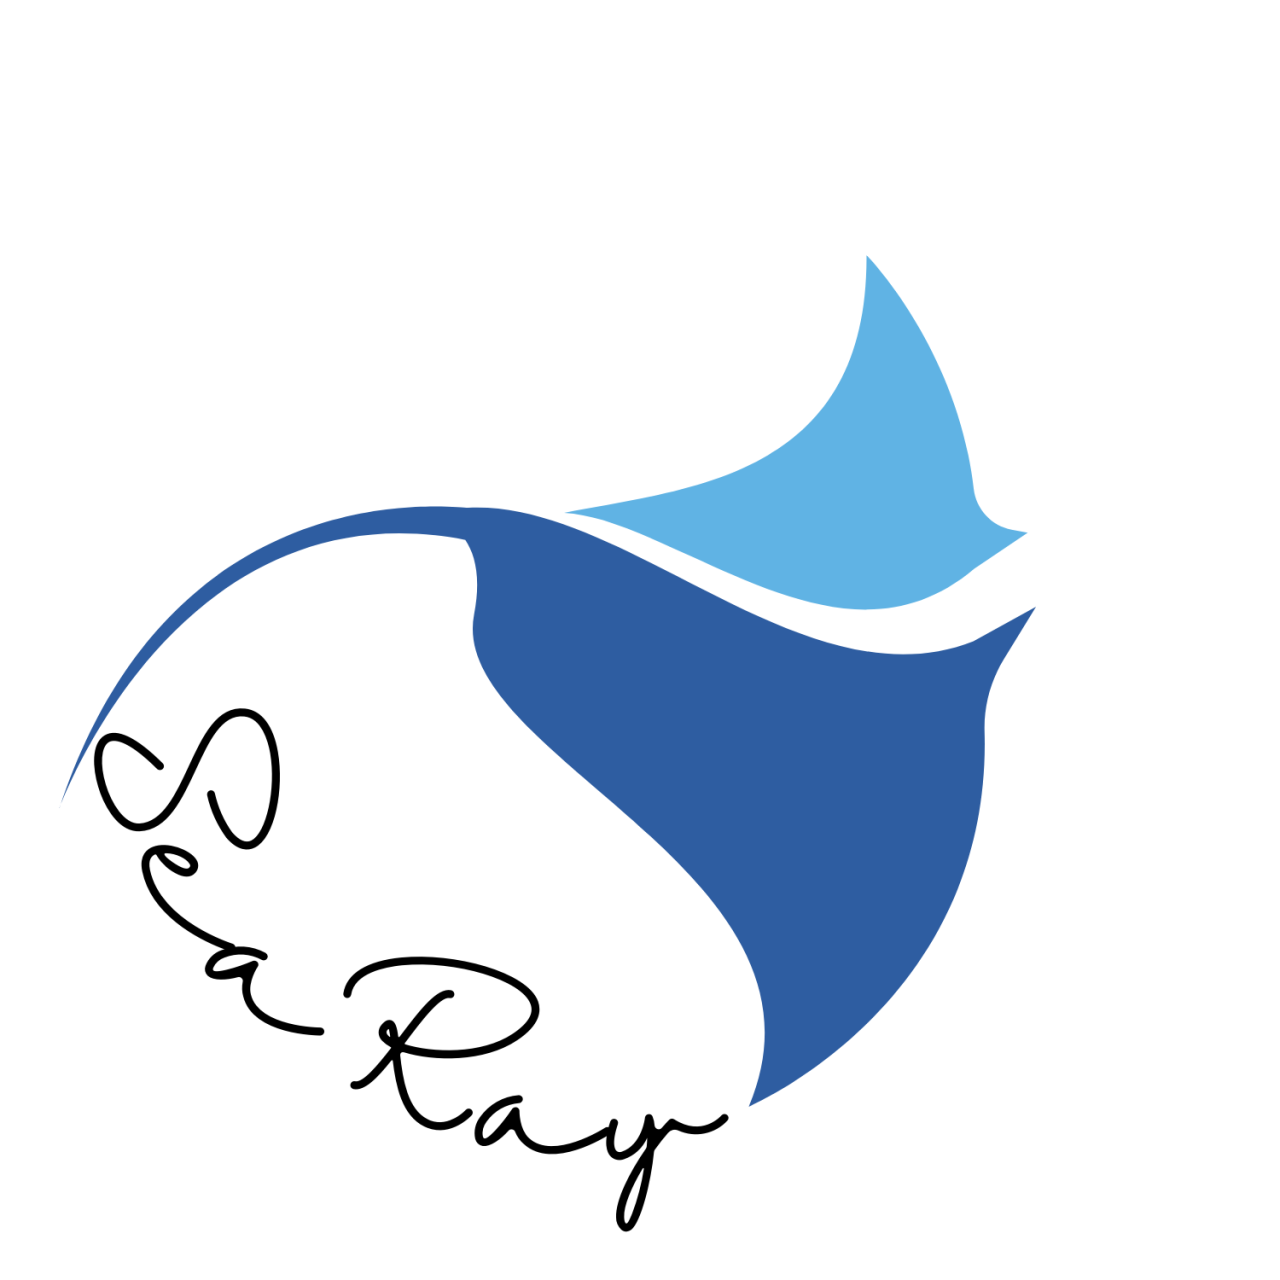 MV Sea Ray logo developed by @TheOceanRoamer